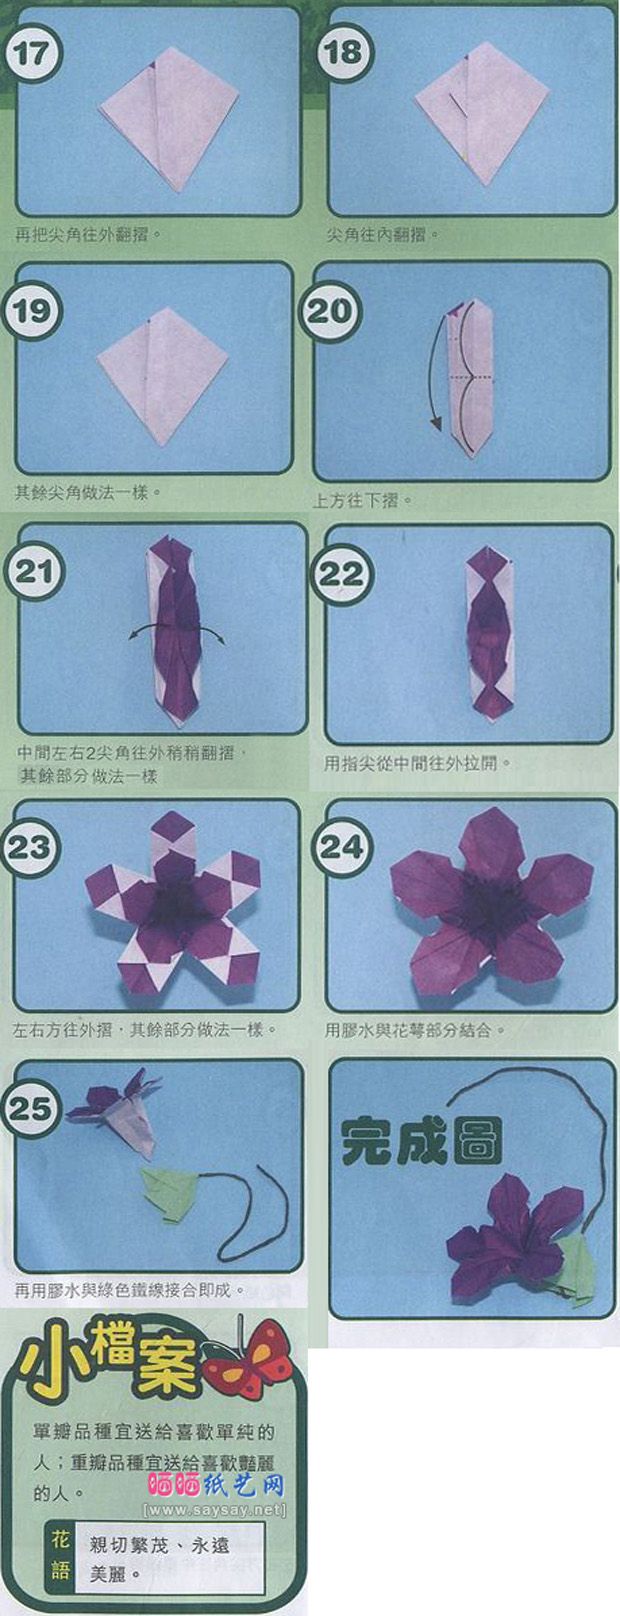 紫罗兰折纸教程步骤3-www.saybb.net